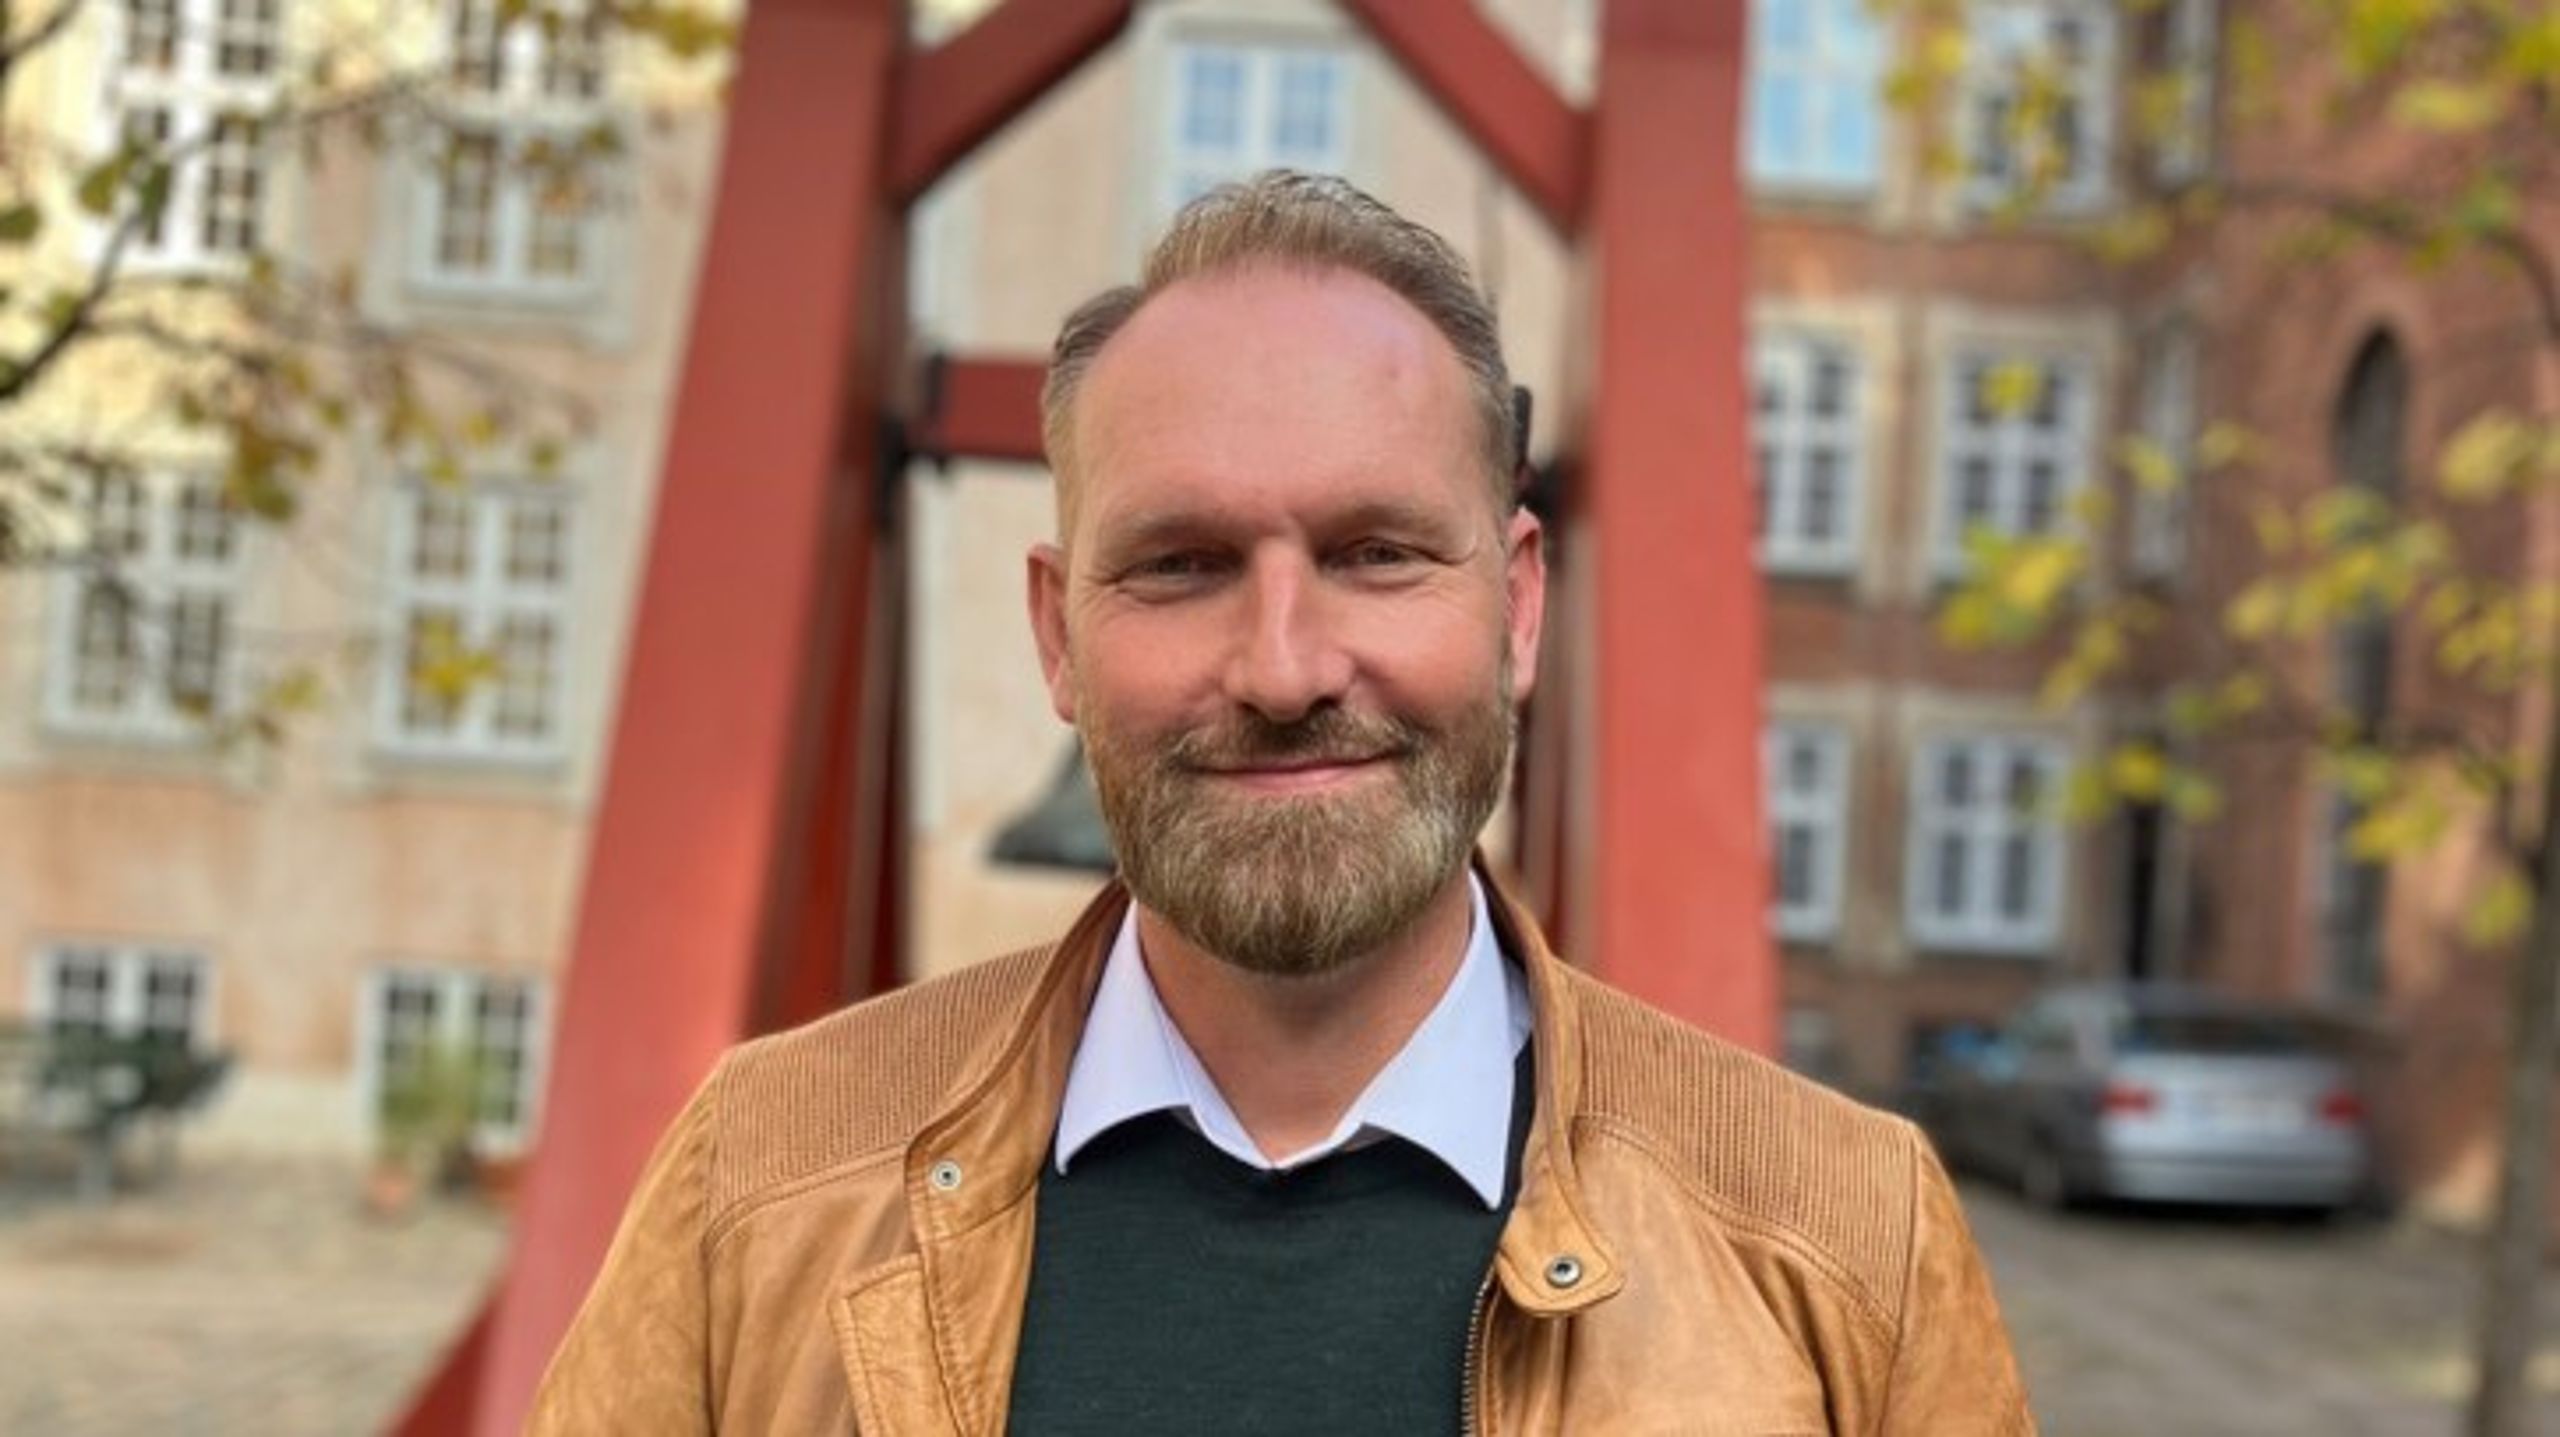 Kristian Danholm har flere års erfaring fra både journalistikken og kommunikationsfaget. Han er tidligere kommunikationschef for Folkekirken Vesterbro.